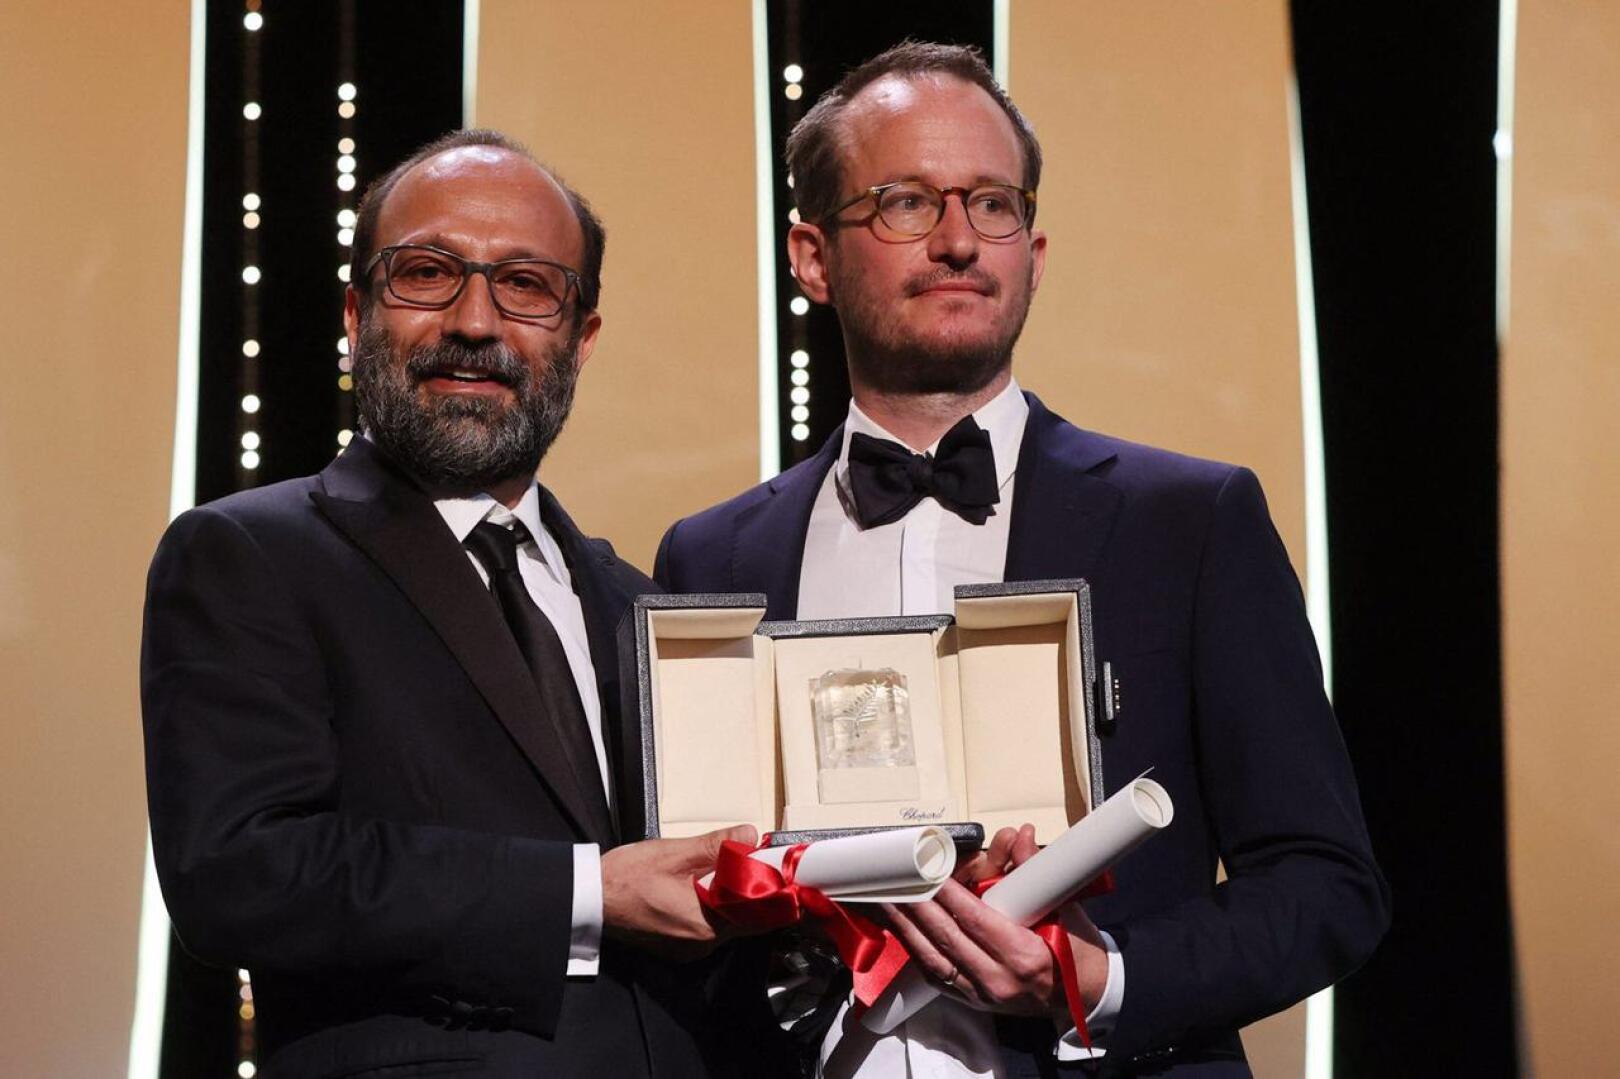 Juho Kuosmasen ohjaama Hytti nro 6 palkittiin Cannesissa lauantaina Grand Prix -palkinnolla